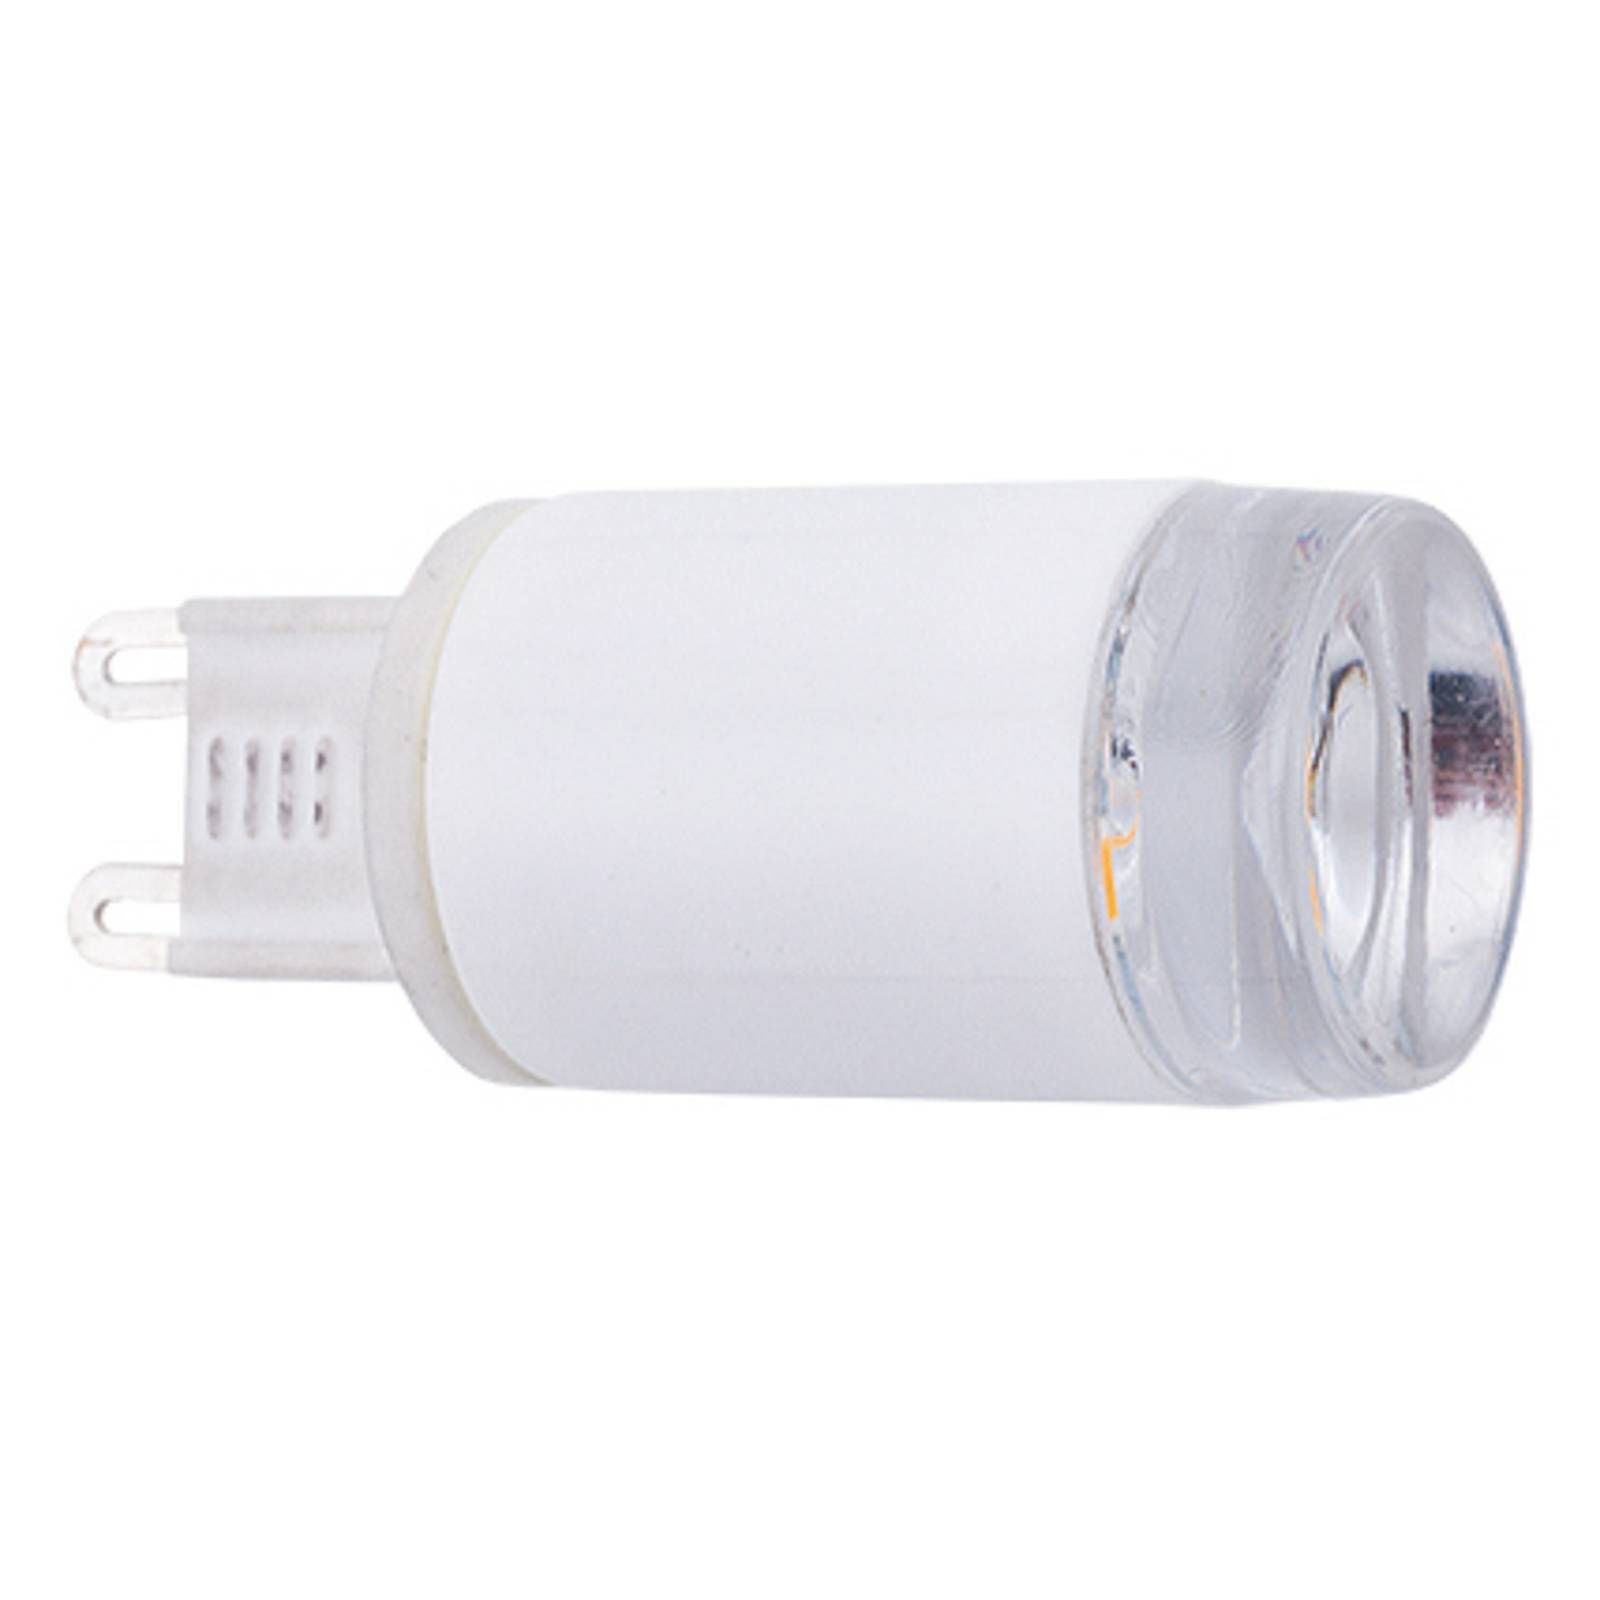 Euluna G9 LED žiarovka 3 W, 280 lm, 3 000 K, 120°, plast, G9, 3W, Energialuokka: F, P: 5.2 cm